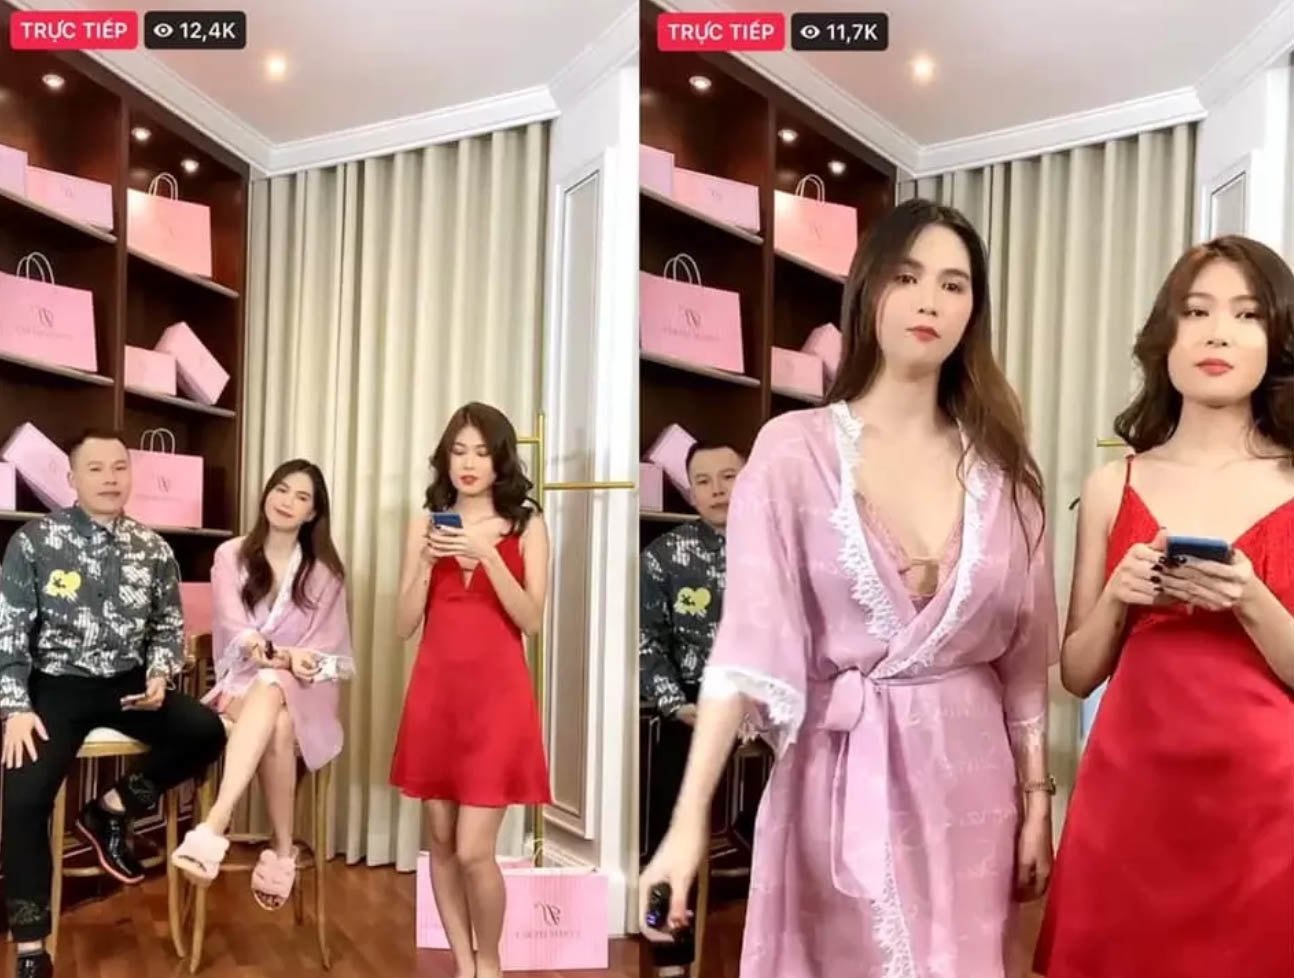 Trong buổi livestream bán hàng, Ngọc Trinh gặp lỗi khủng với chiếc quần bó sát - vòng 3